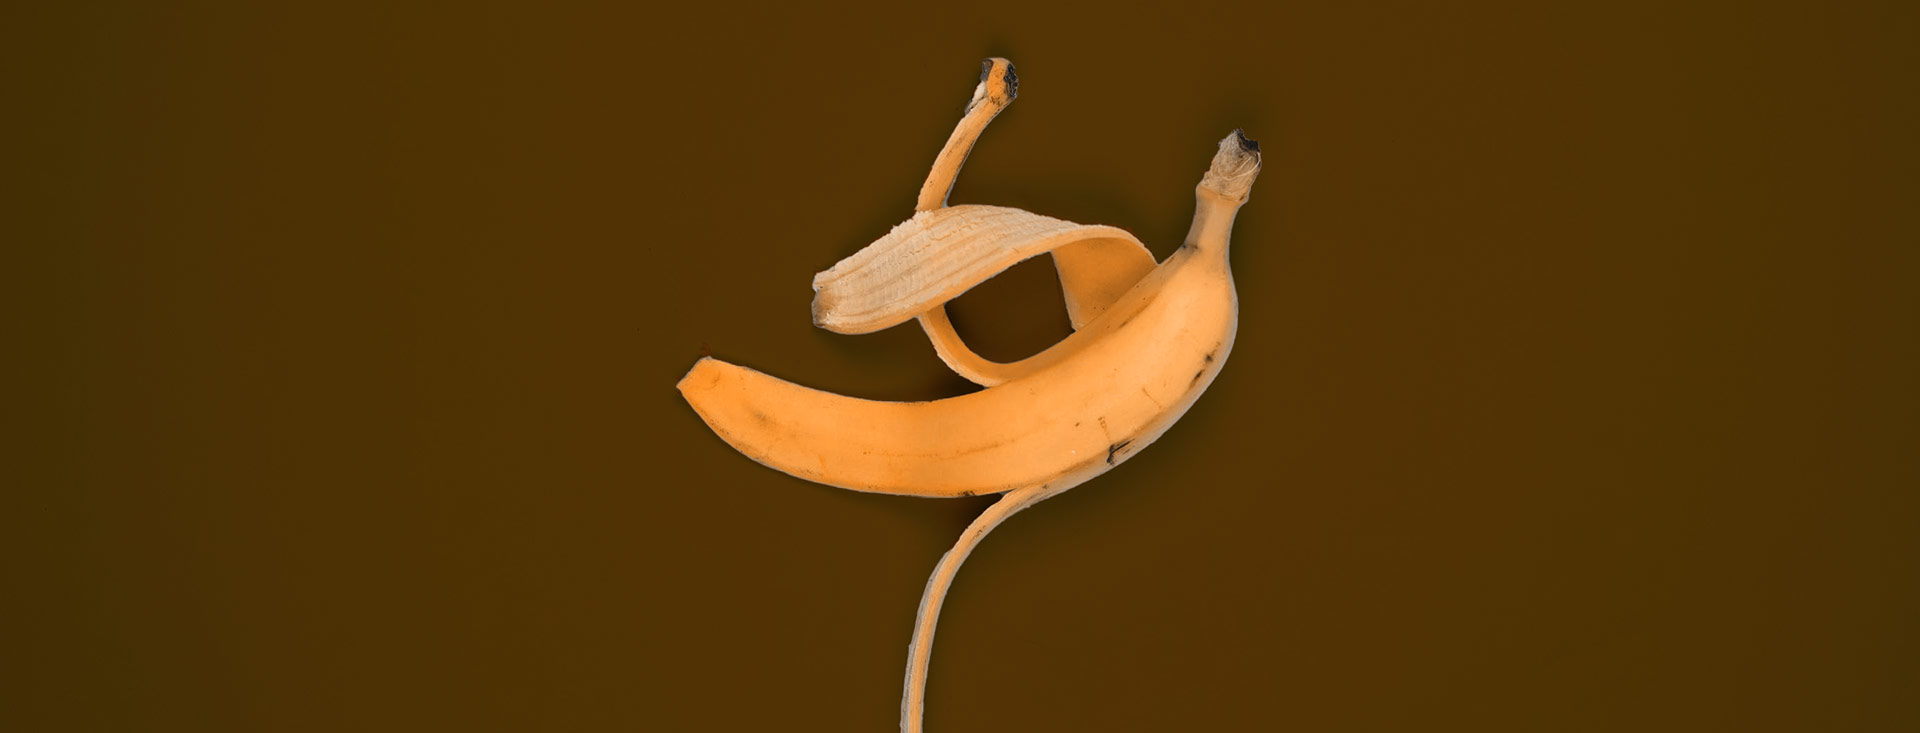 Bananenschale auf braunem Grund